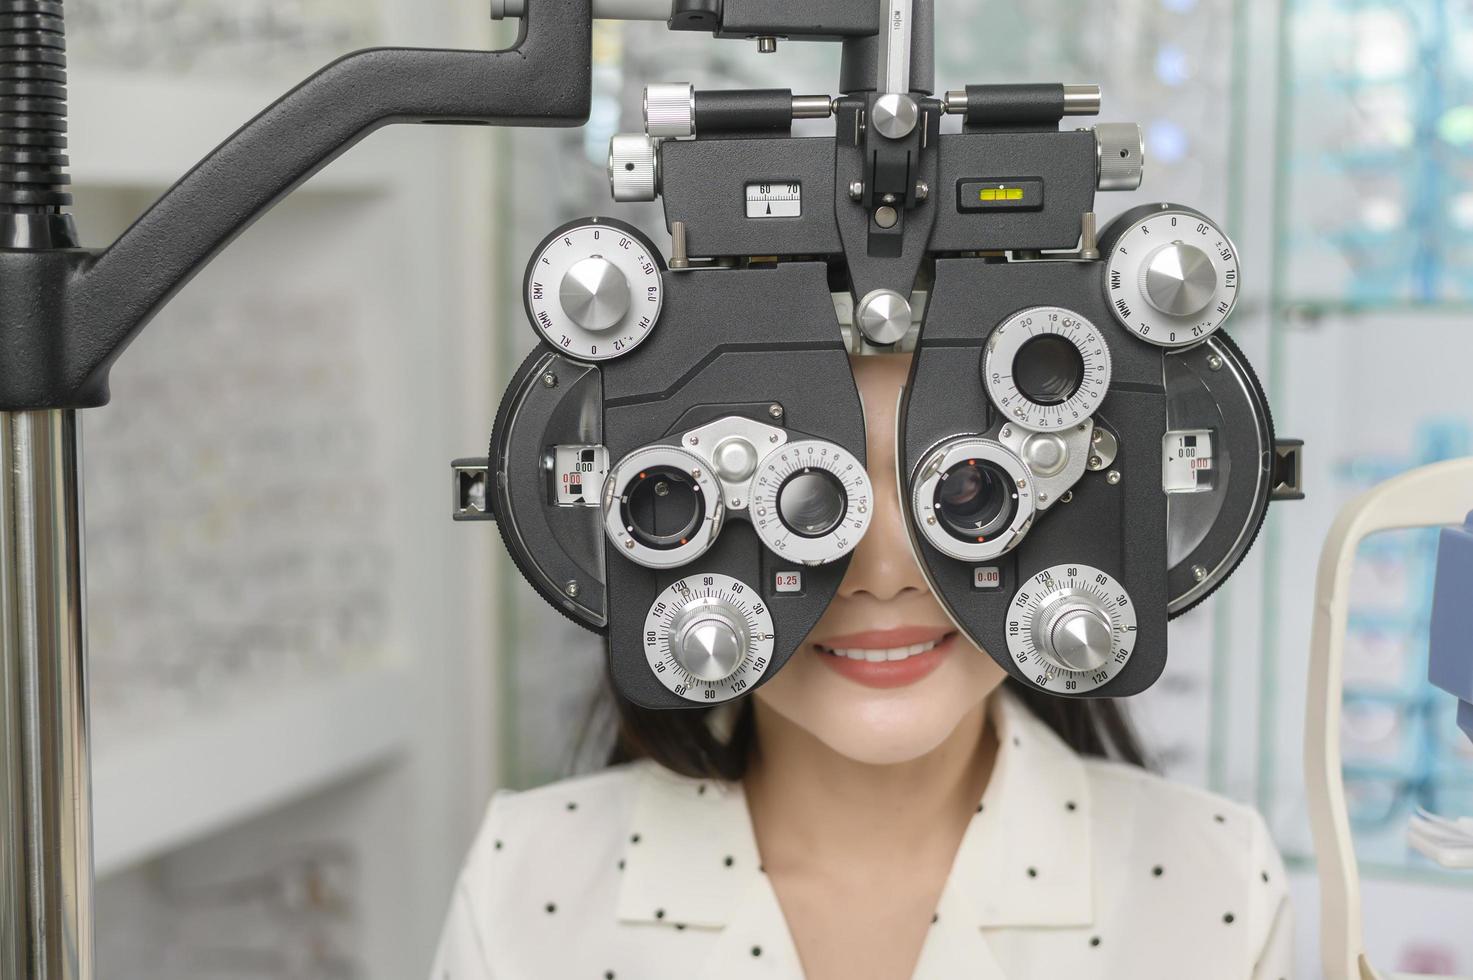 una joven clienta que está siendo examinada con una prueba visual usando un dispositivo de medición de la vista de optometría bifocal por un oftalmólogo en el centro óptico, concepto de cuidado de los ojos. foto